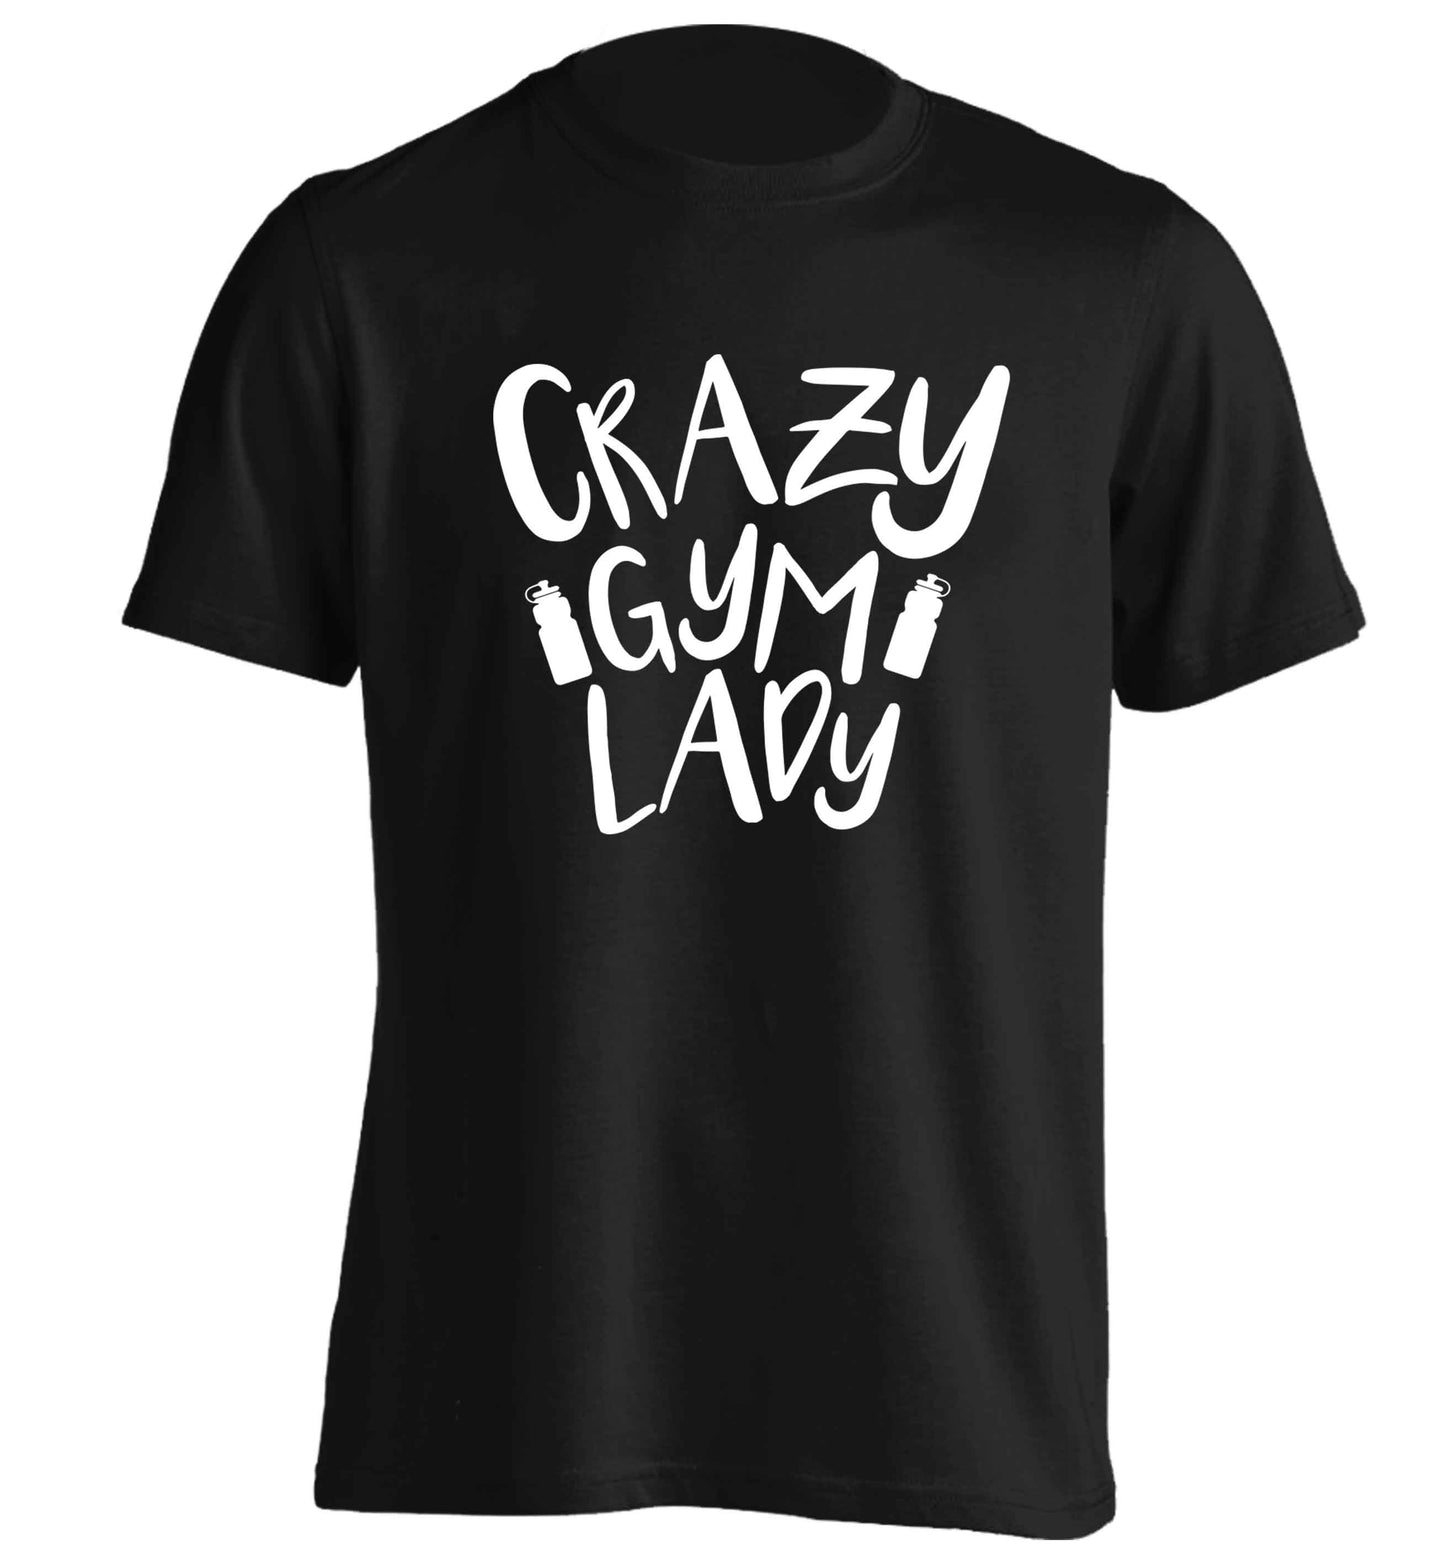 Crazy gym lady adults unisex black Tshirt 2XL